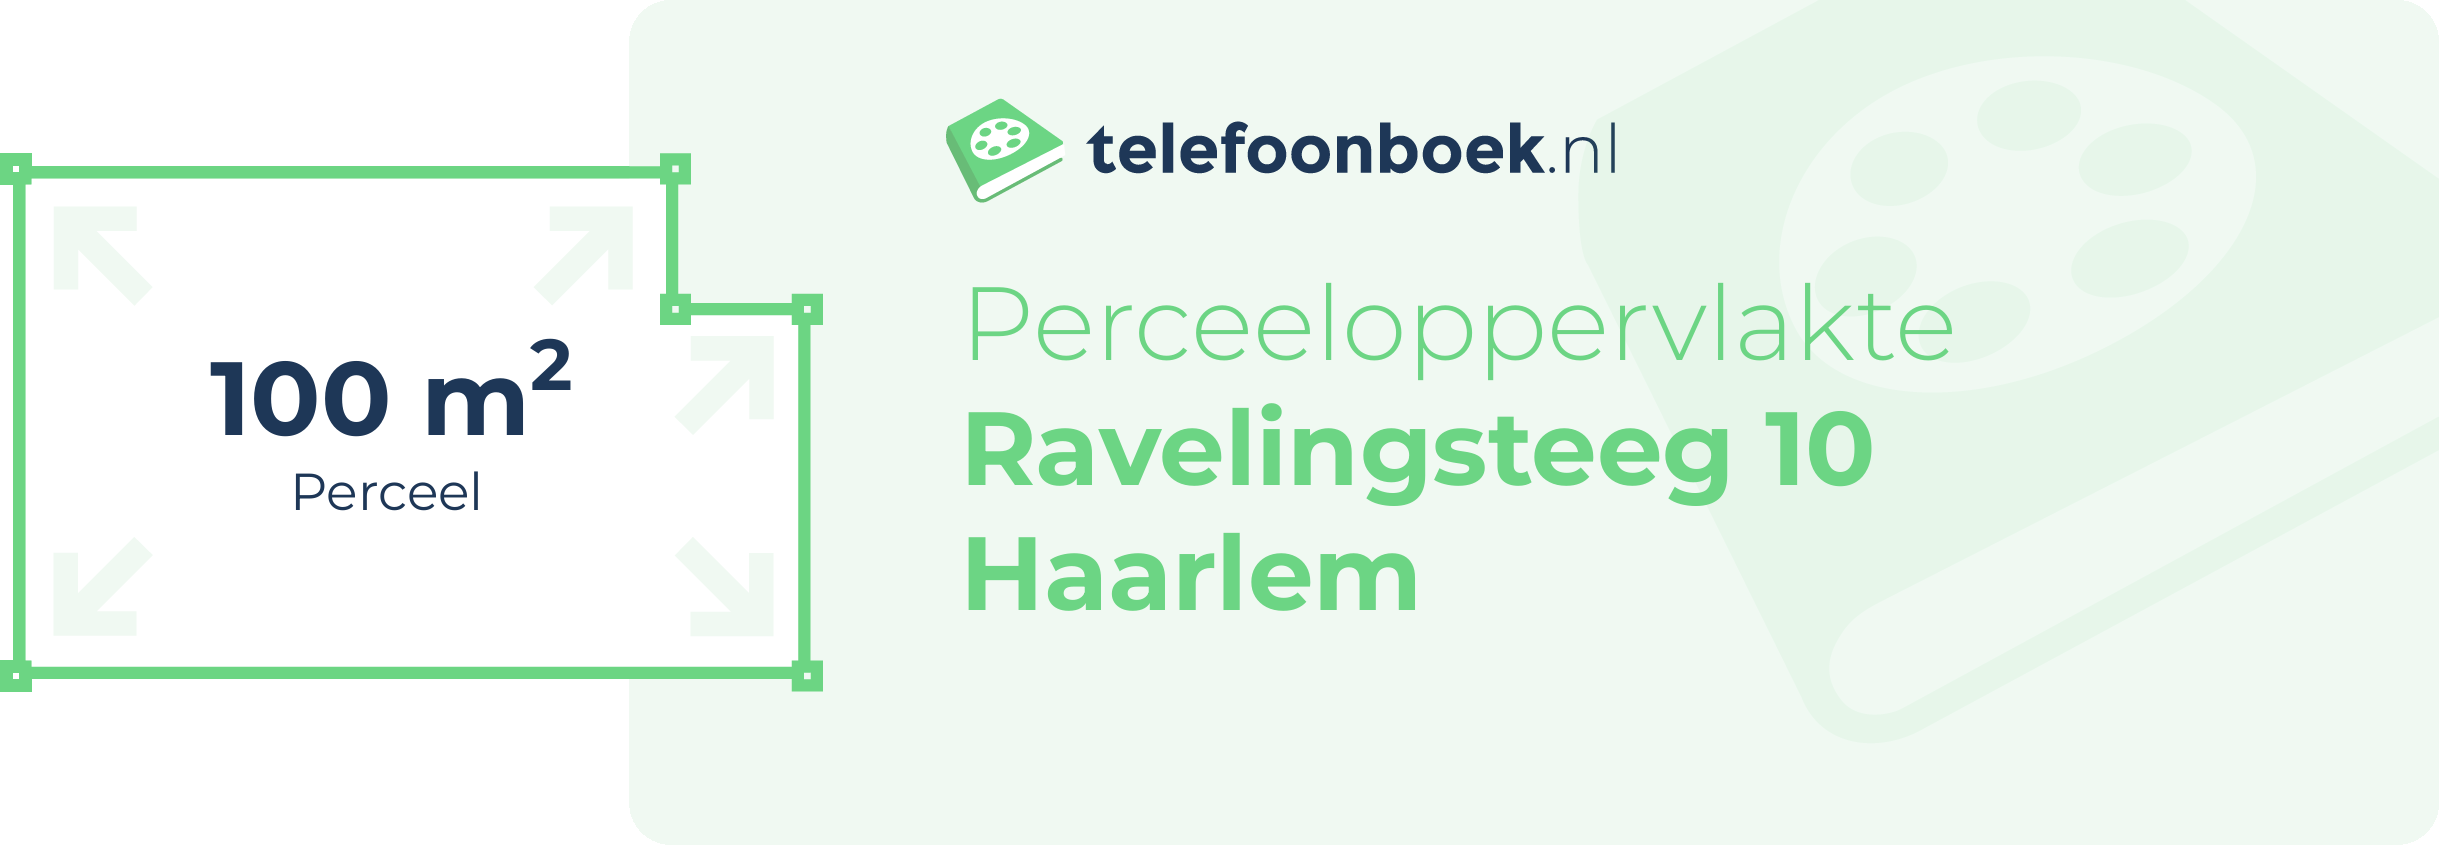 Perceeloppervlakte Ravelingsteeg 10 Haarlem